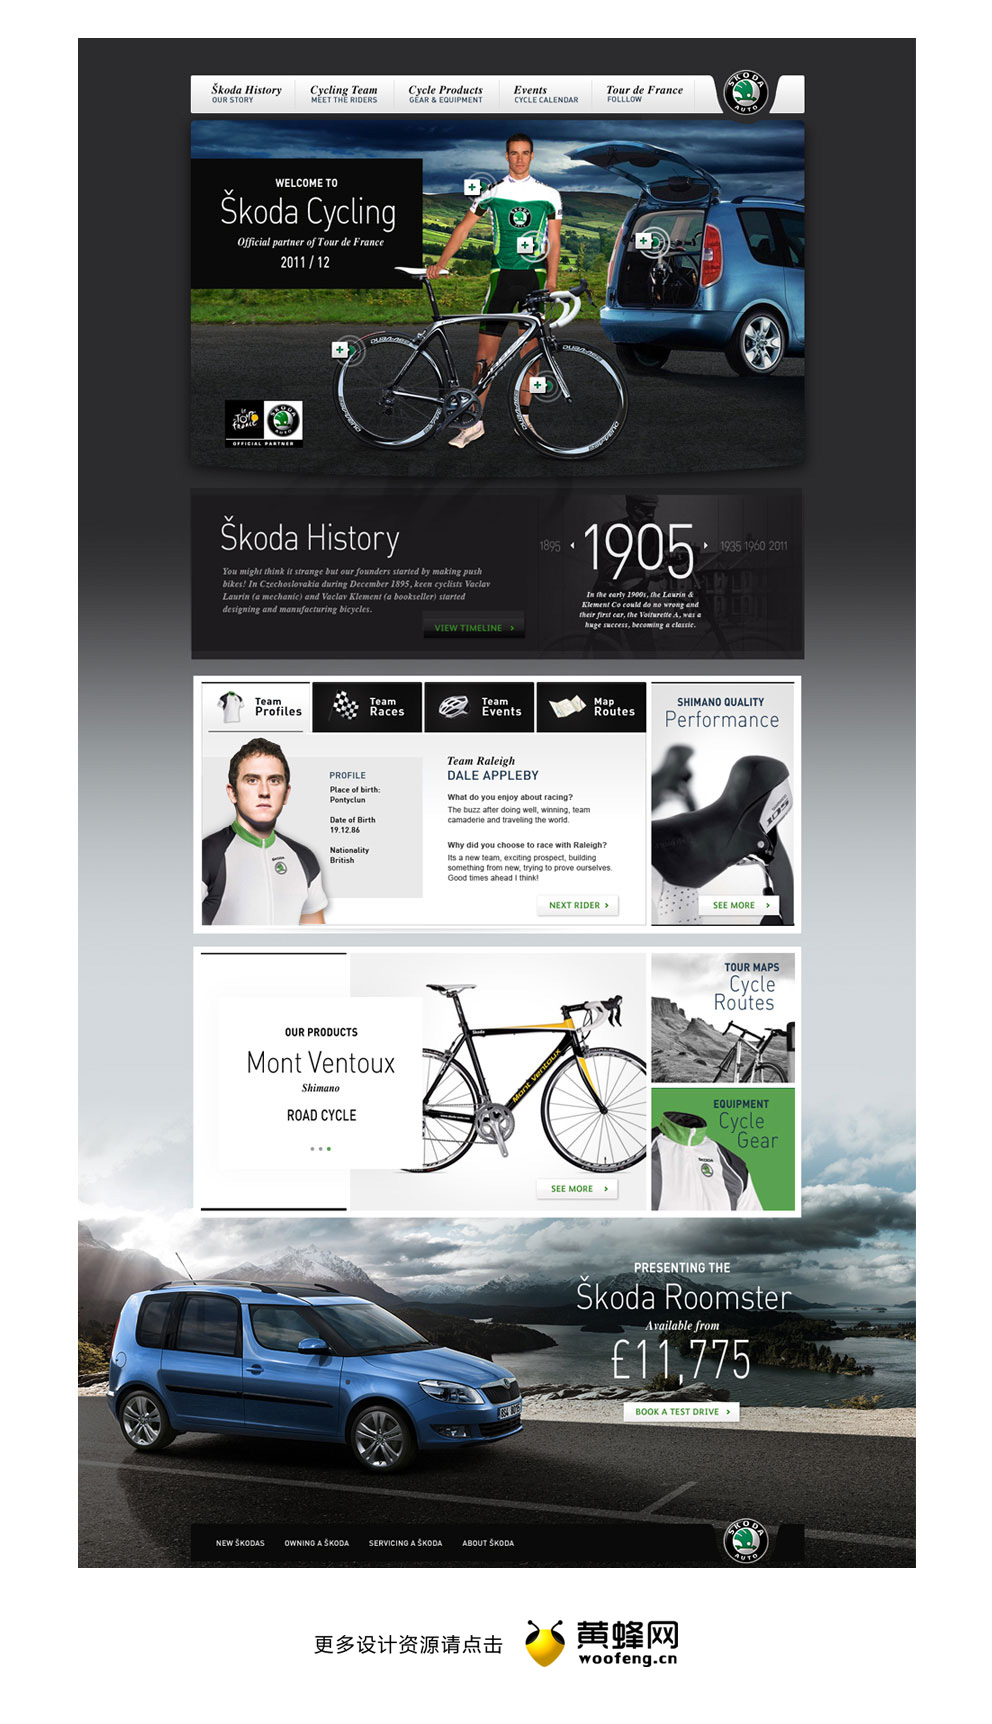 斯柯达汽车和骑自行车活动网页设计，来自黄蜂网https://woofeng.cn/